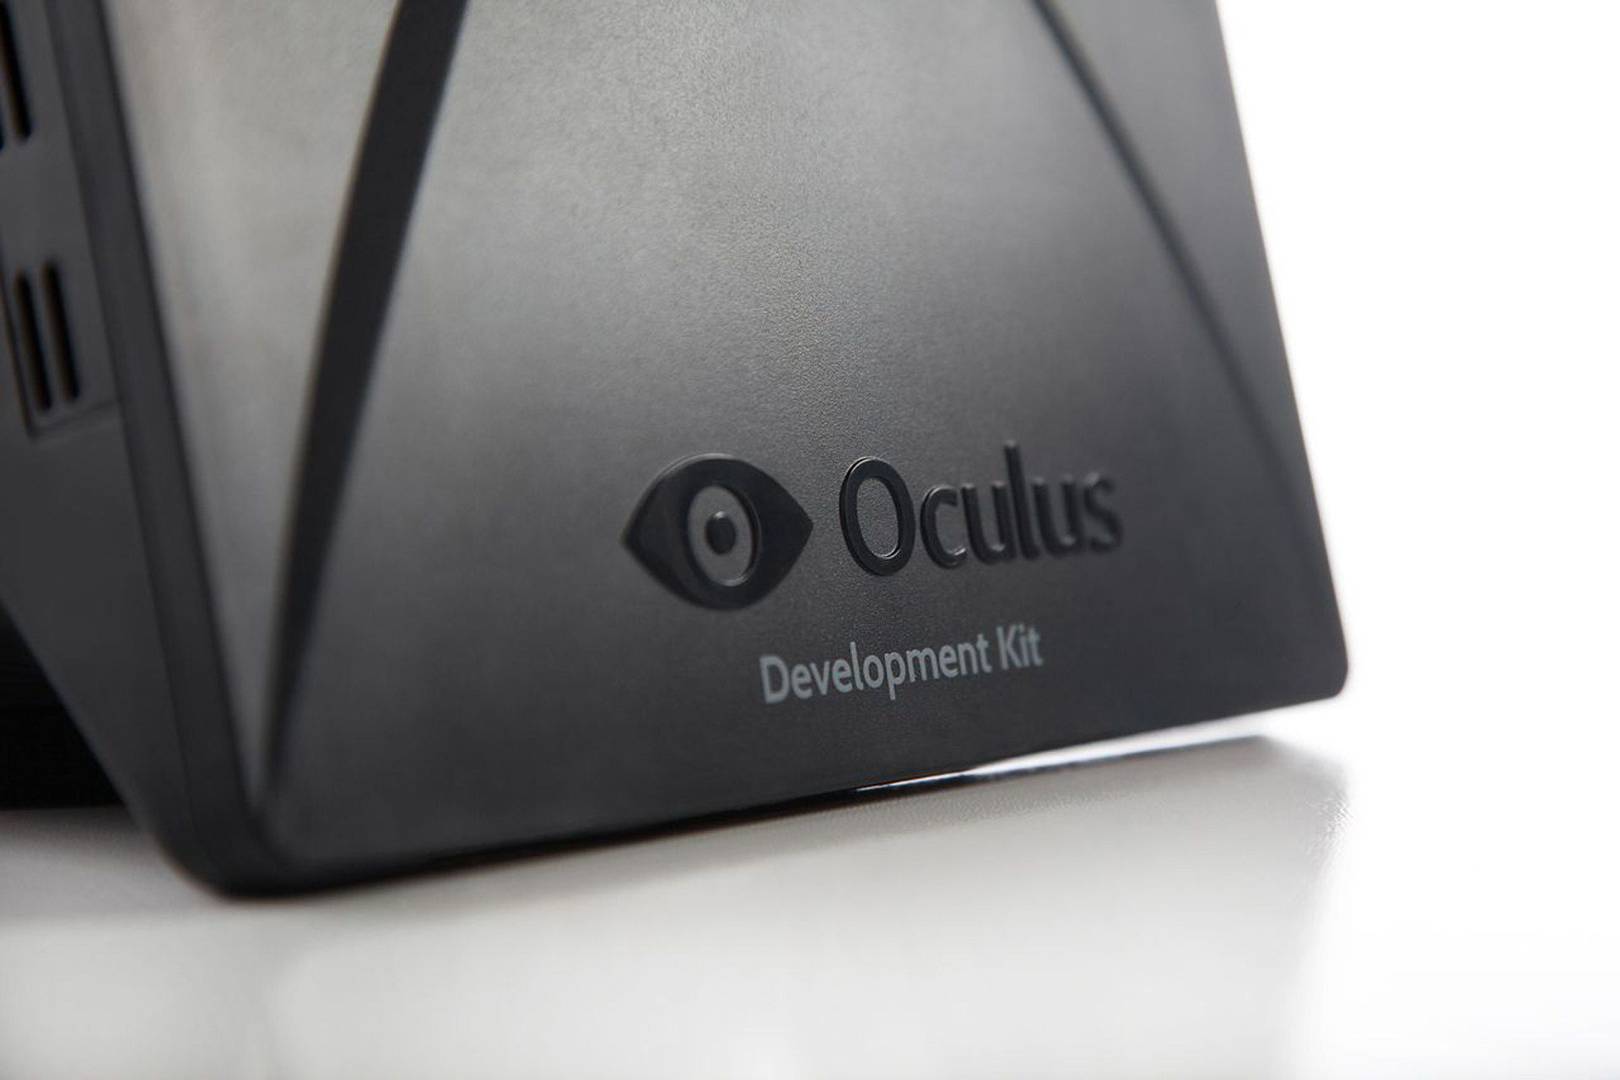 oculus rift s eye tracking